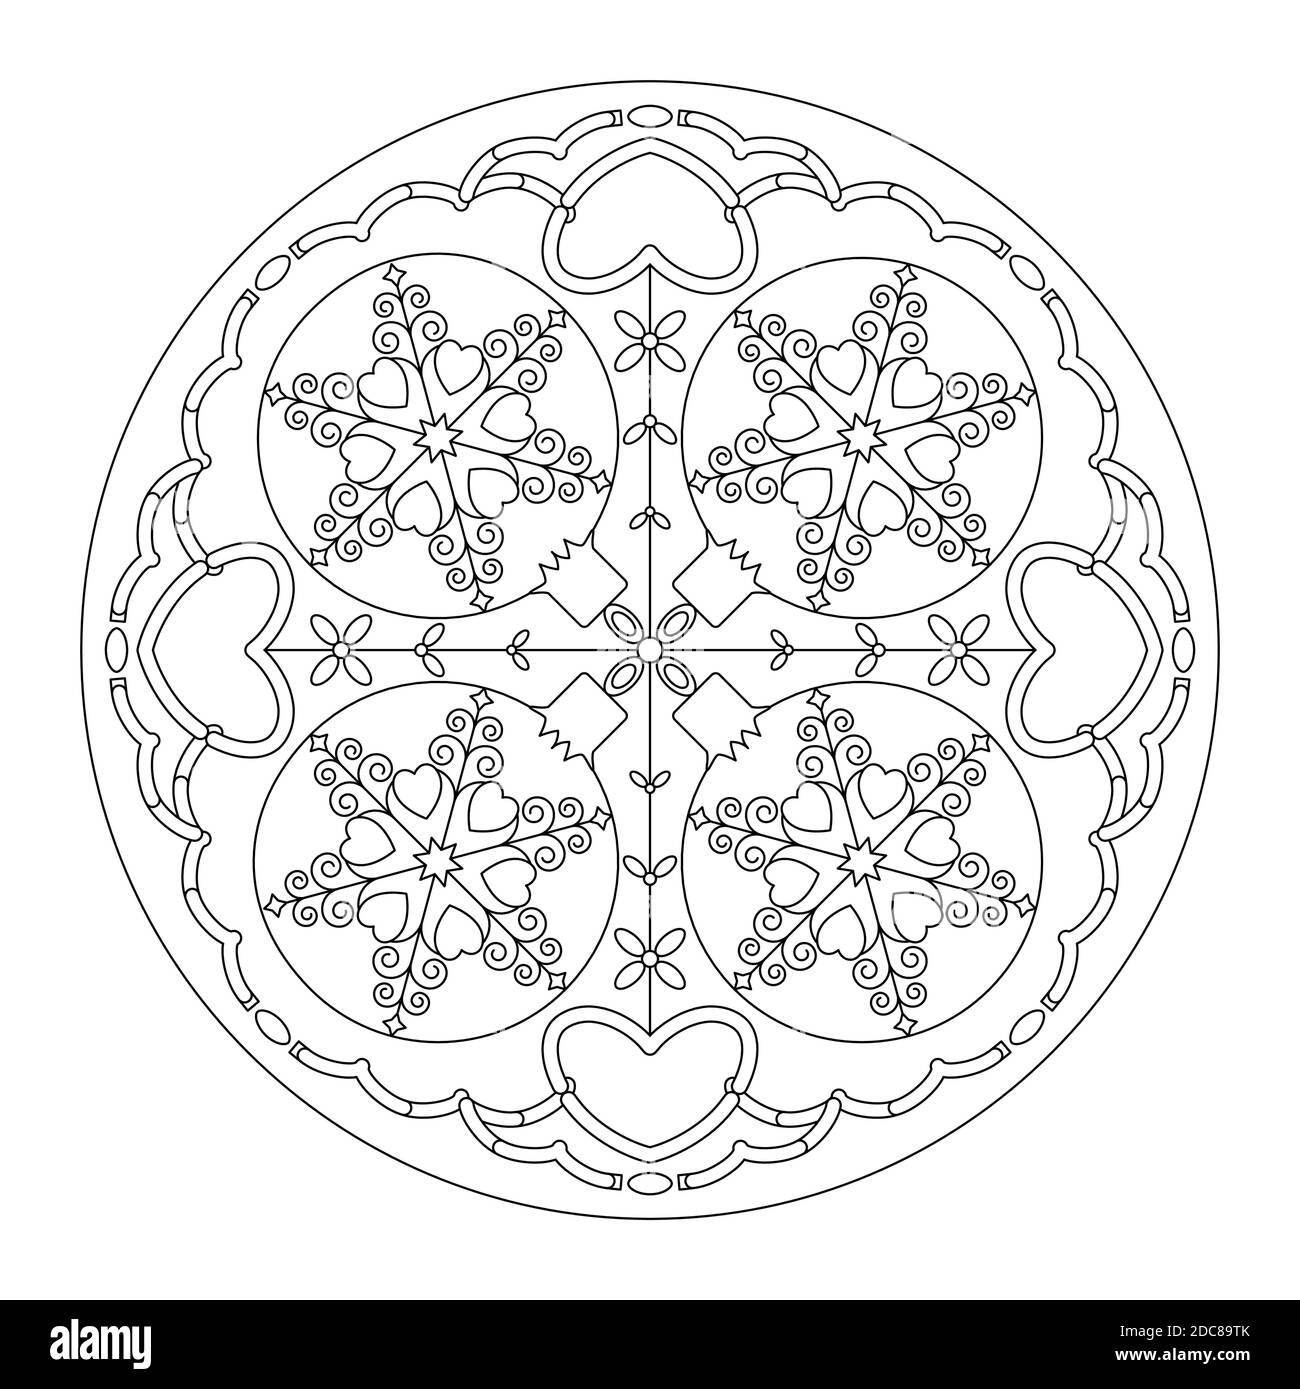 Weihnachts-Mandala. Malseite. Hübsche Weihnachtskugeln und Herzen. Schwarz und Weiß. Vektorgrafik. Stock Vektor